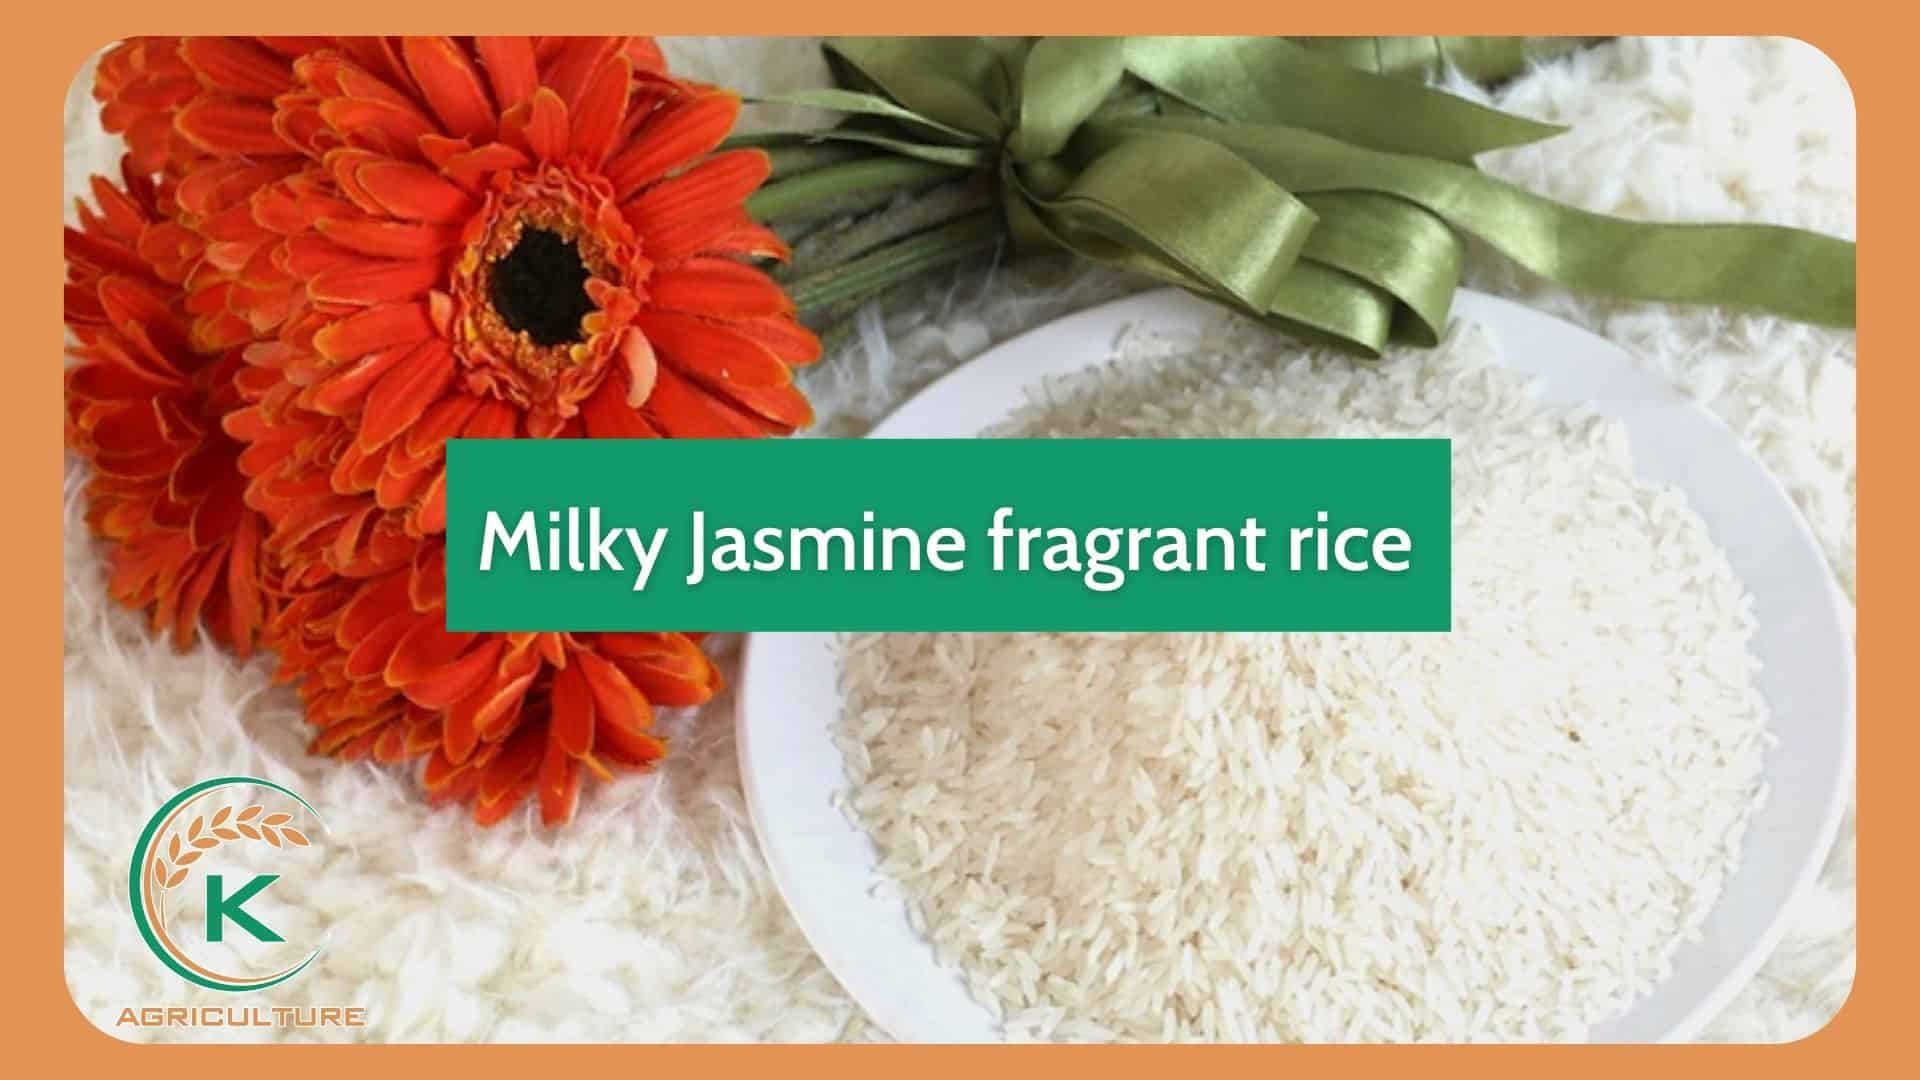 jasmine-rice-manufacturer-in-vietnam-2.jpg